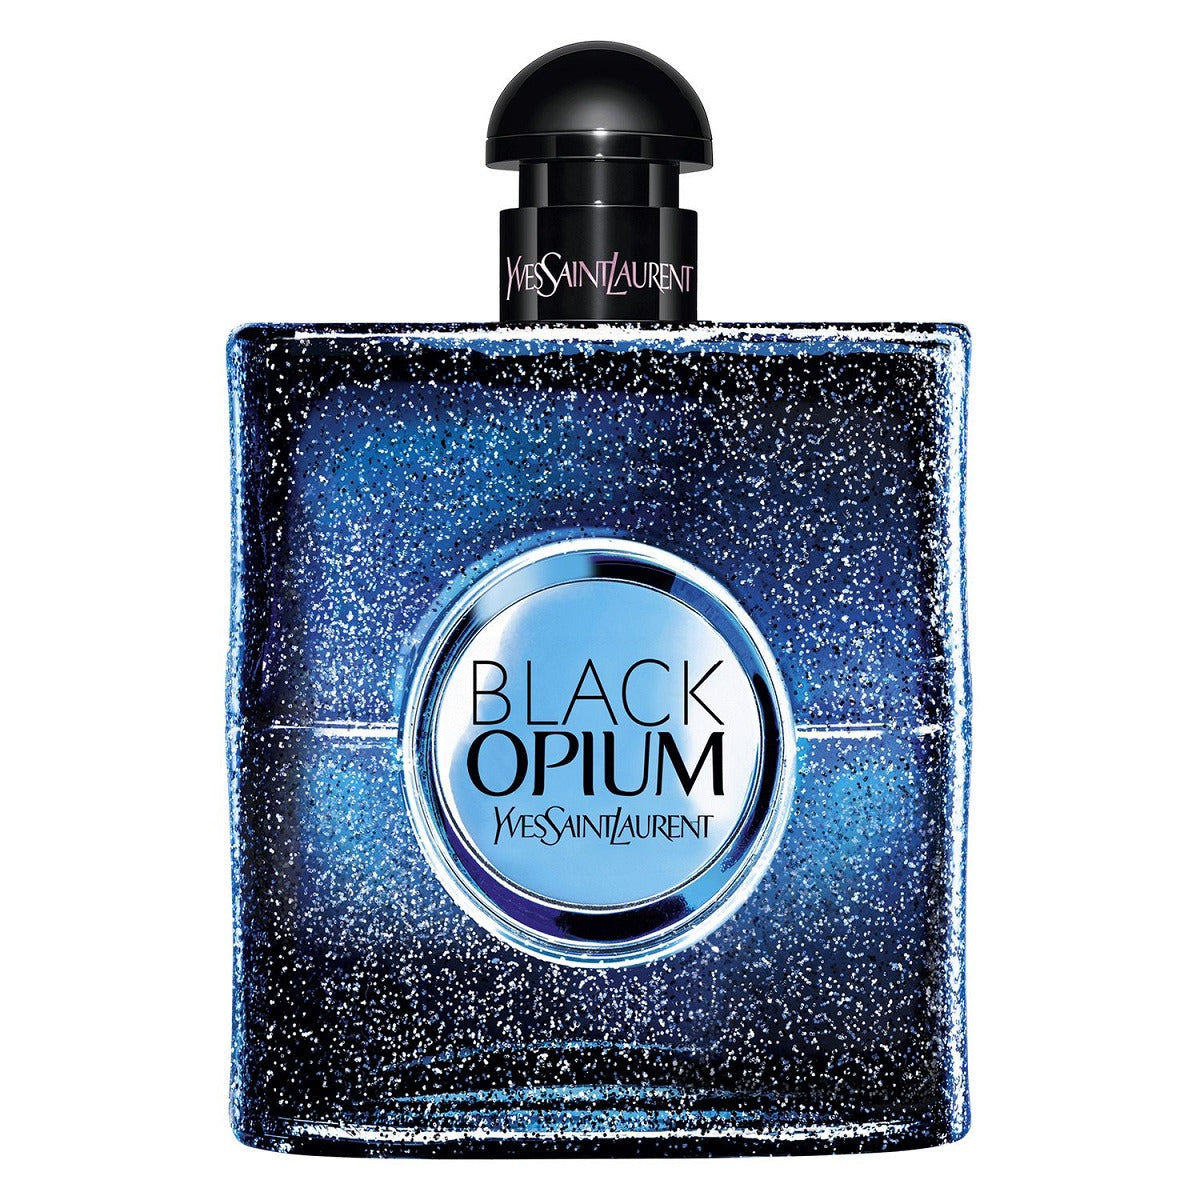 yves saint laurent black opium intense woda perfumowana 90 ml   